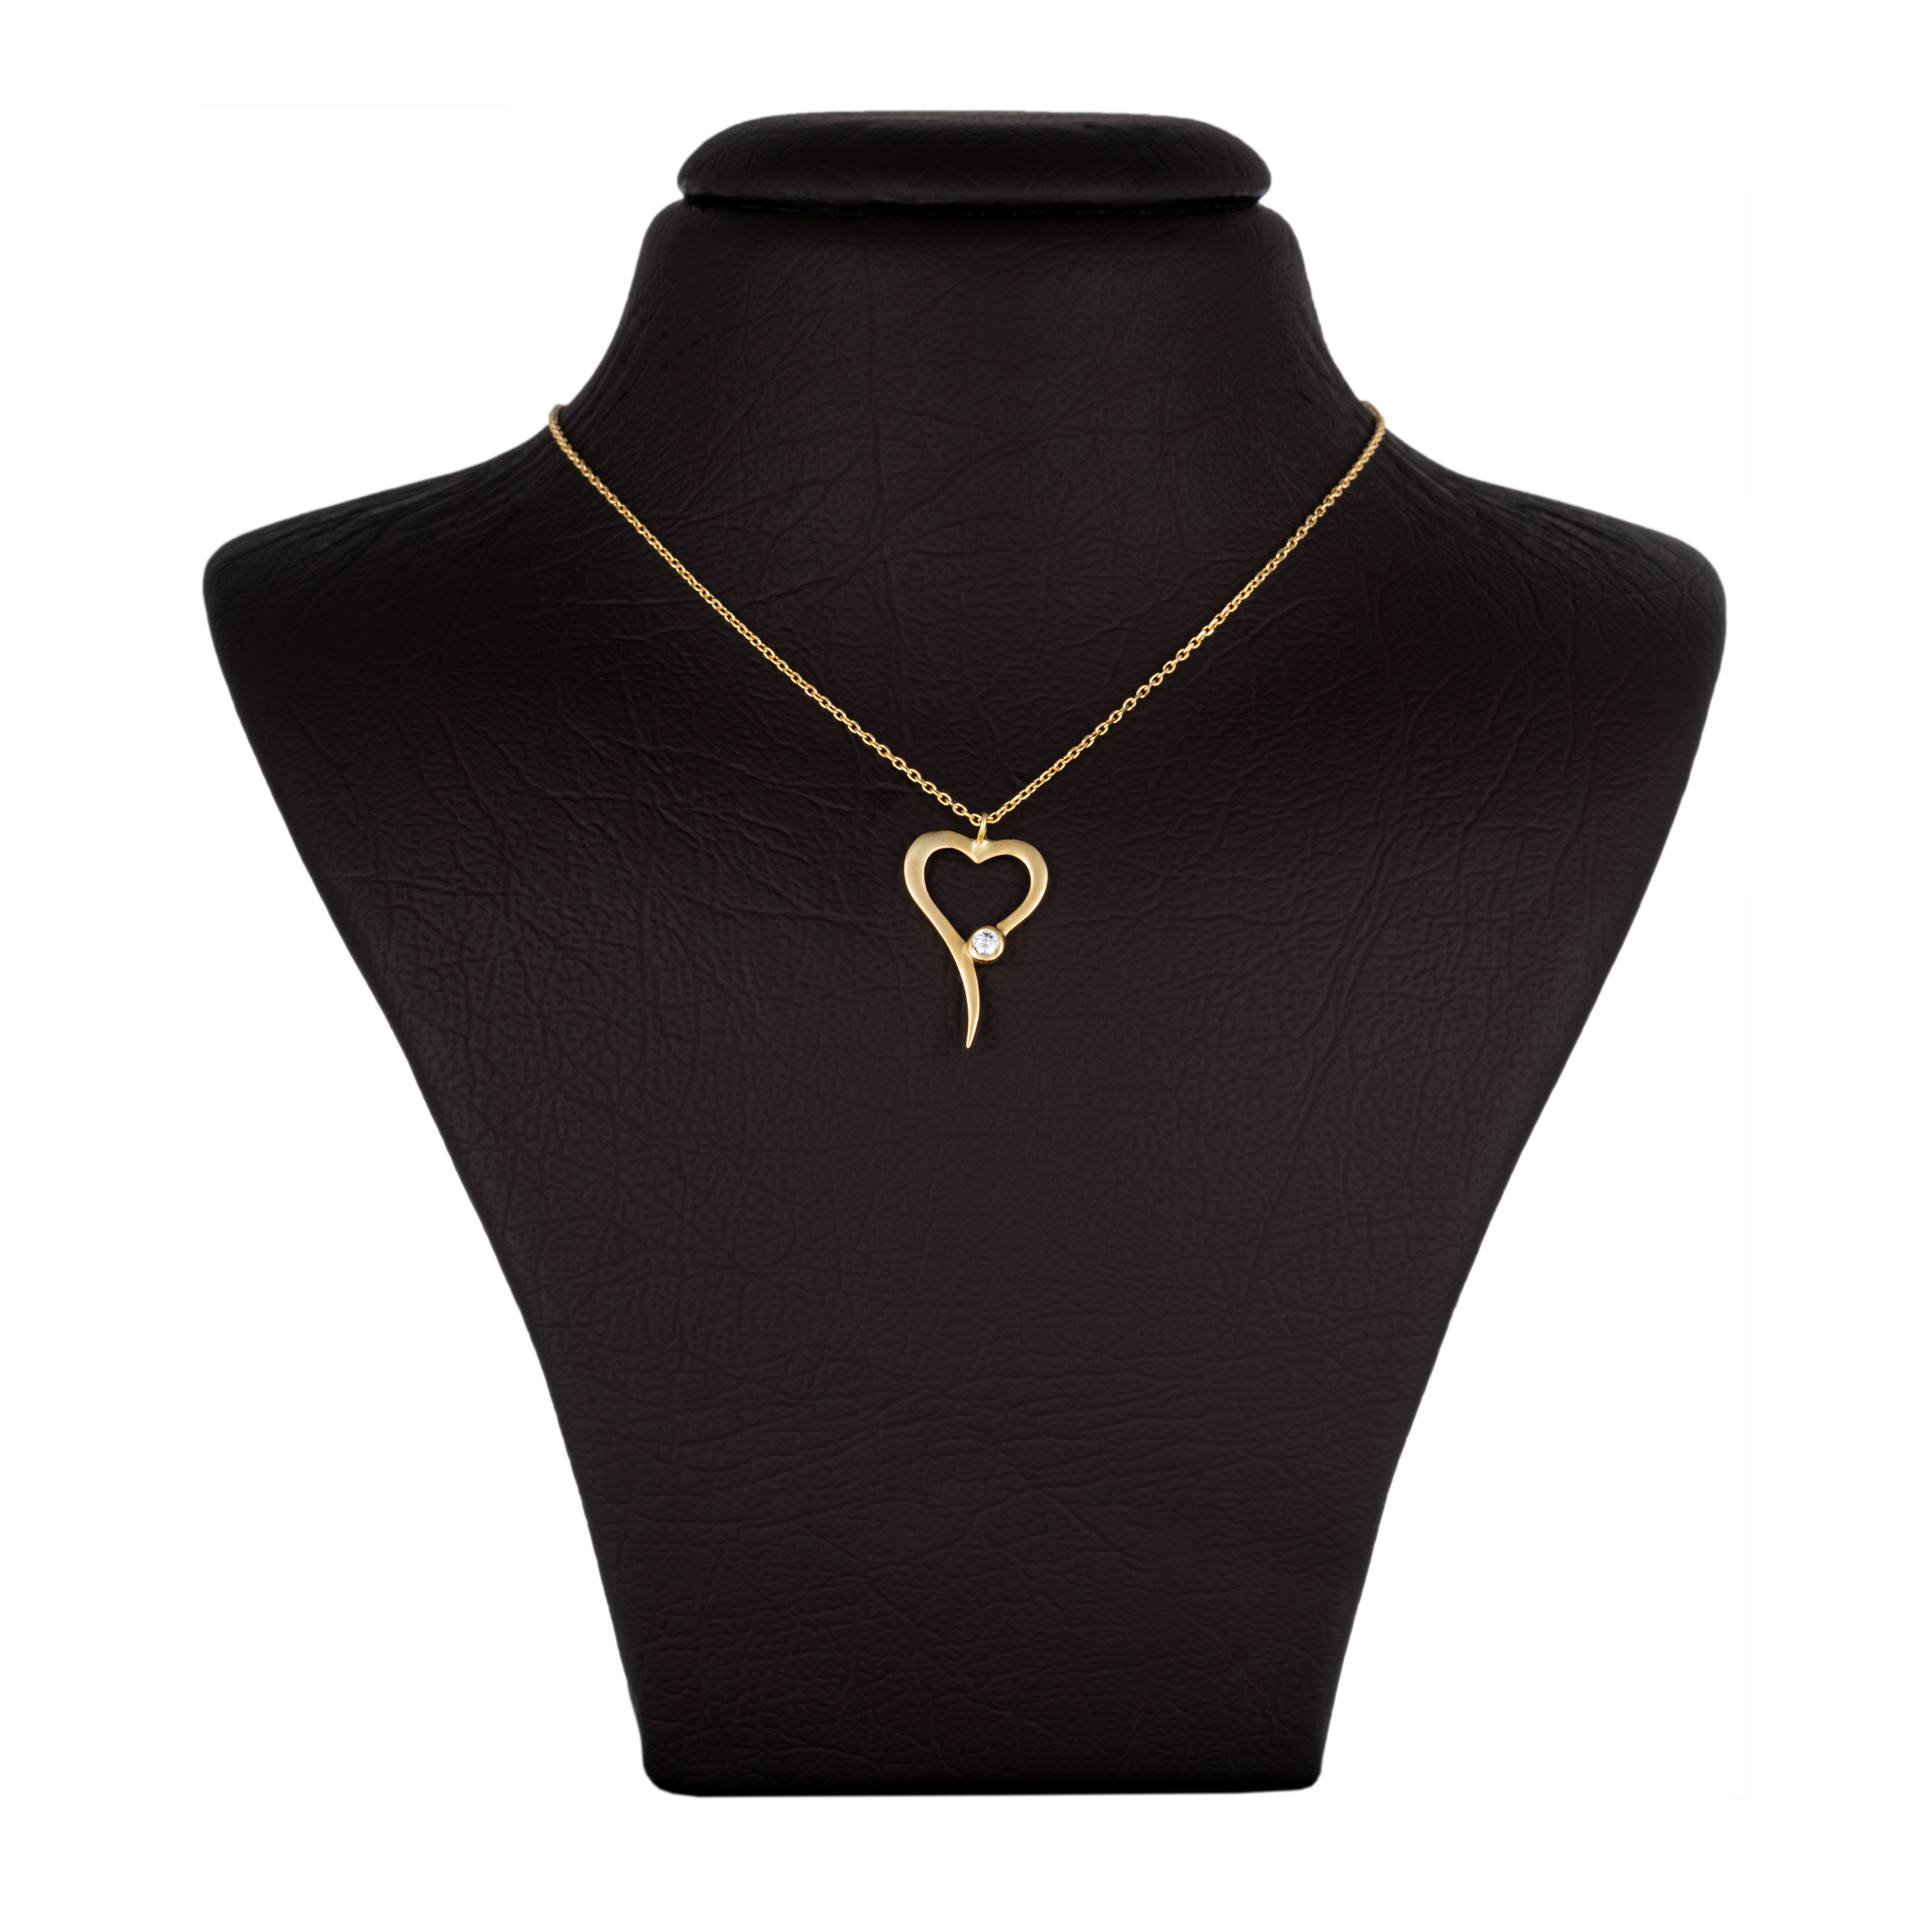  گردنبند طلا 18 عیار زنانه جواهری سون مدل 2499 -  - 1